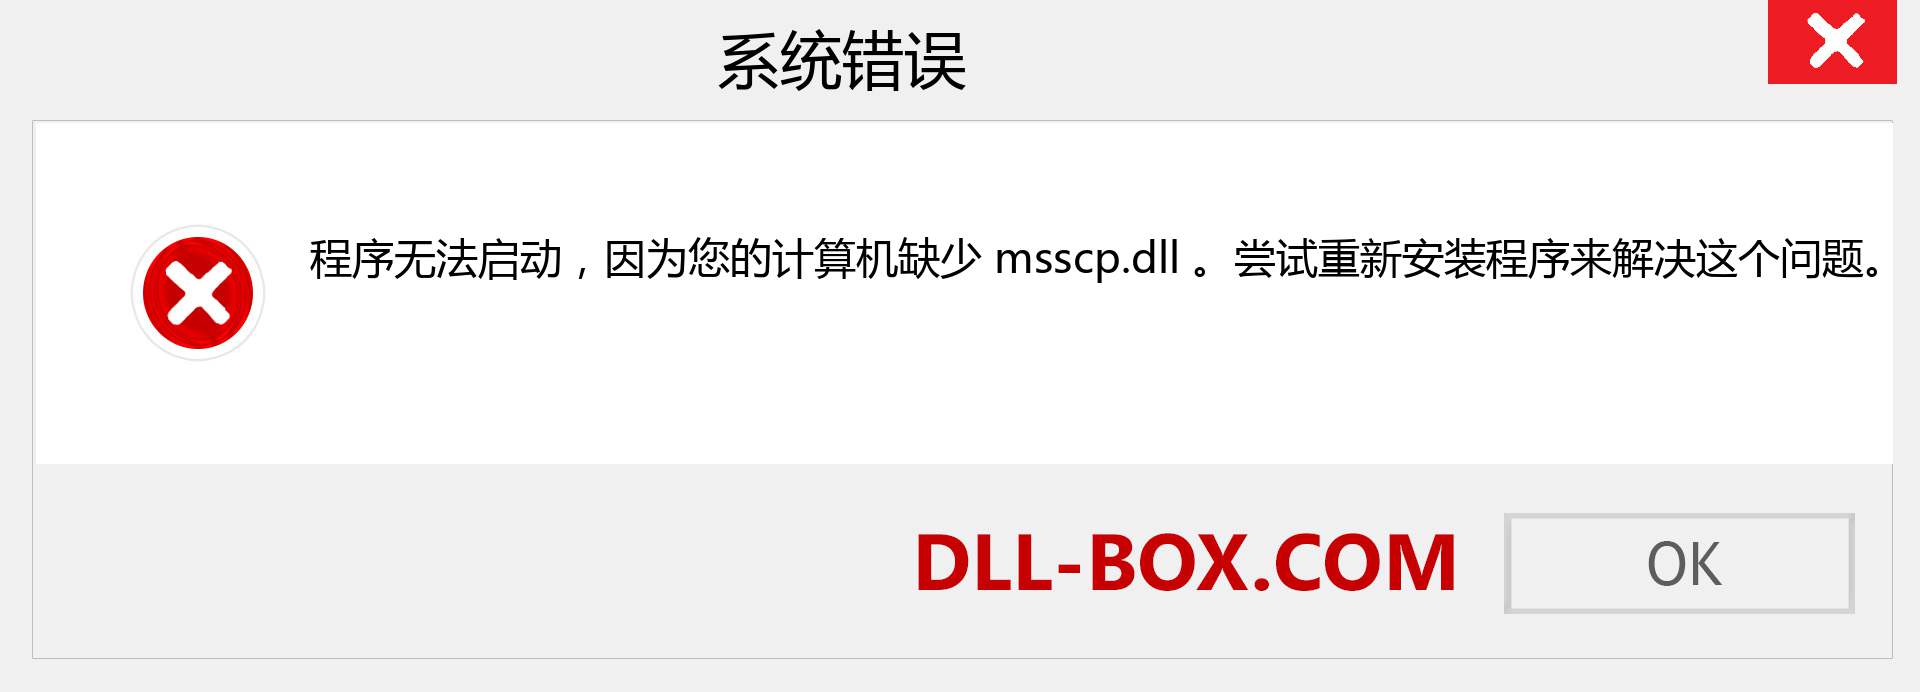 msscp.dll 文件丢失？。 适用于 Windows 7、8、10 的下载 - 修复 Windows、照片、图像上的 msscp dll 丢失错误